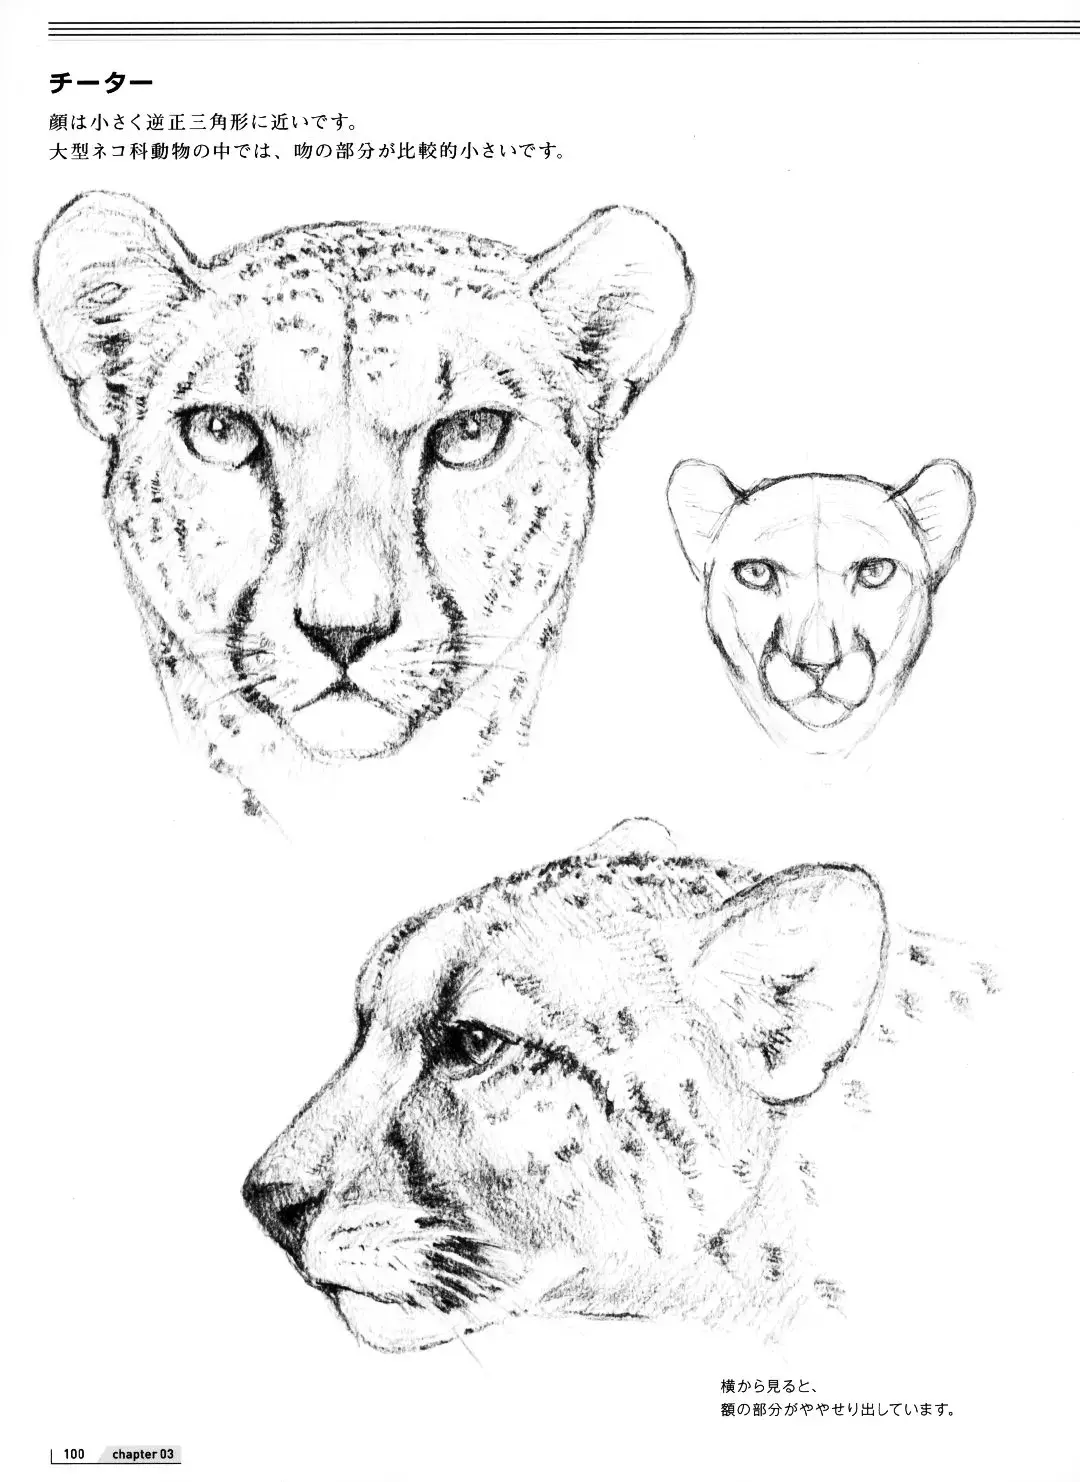 豹子简笔画：傲娇的小豹子看着确实有点可爱呀。附赠豹子的特点和生活习性 - 天天手抄报